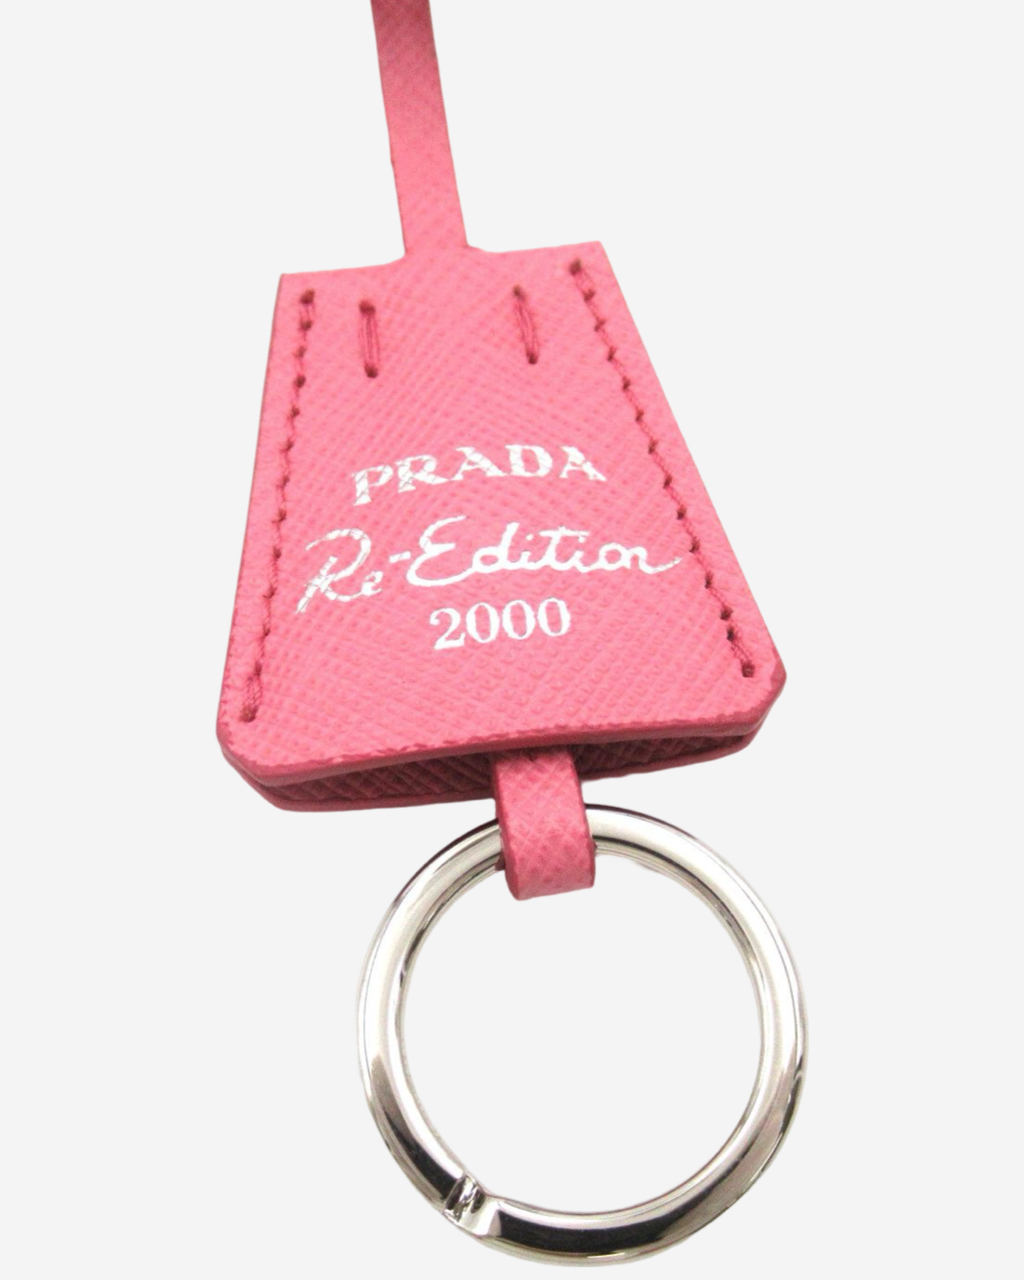 Bolsa Prada Re-edition 2000